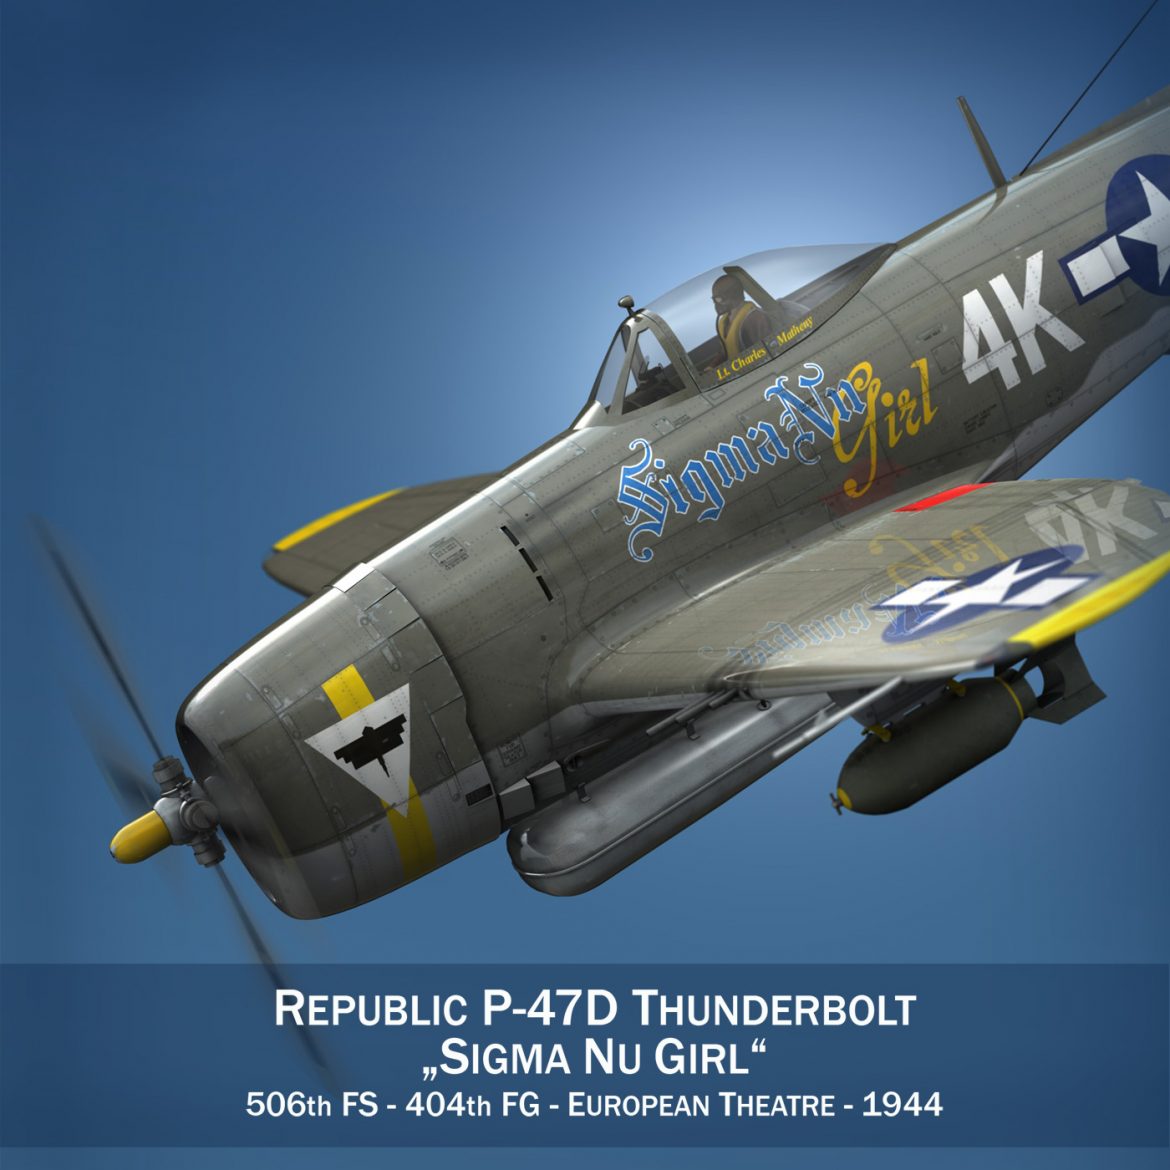 republic p-47d thunderbolt – sigma nu girl 3d model fbx c4d lwo obj 299907